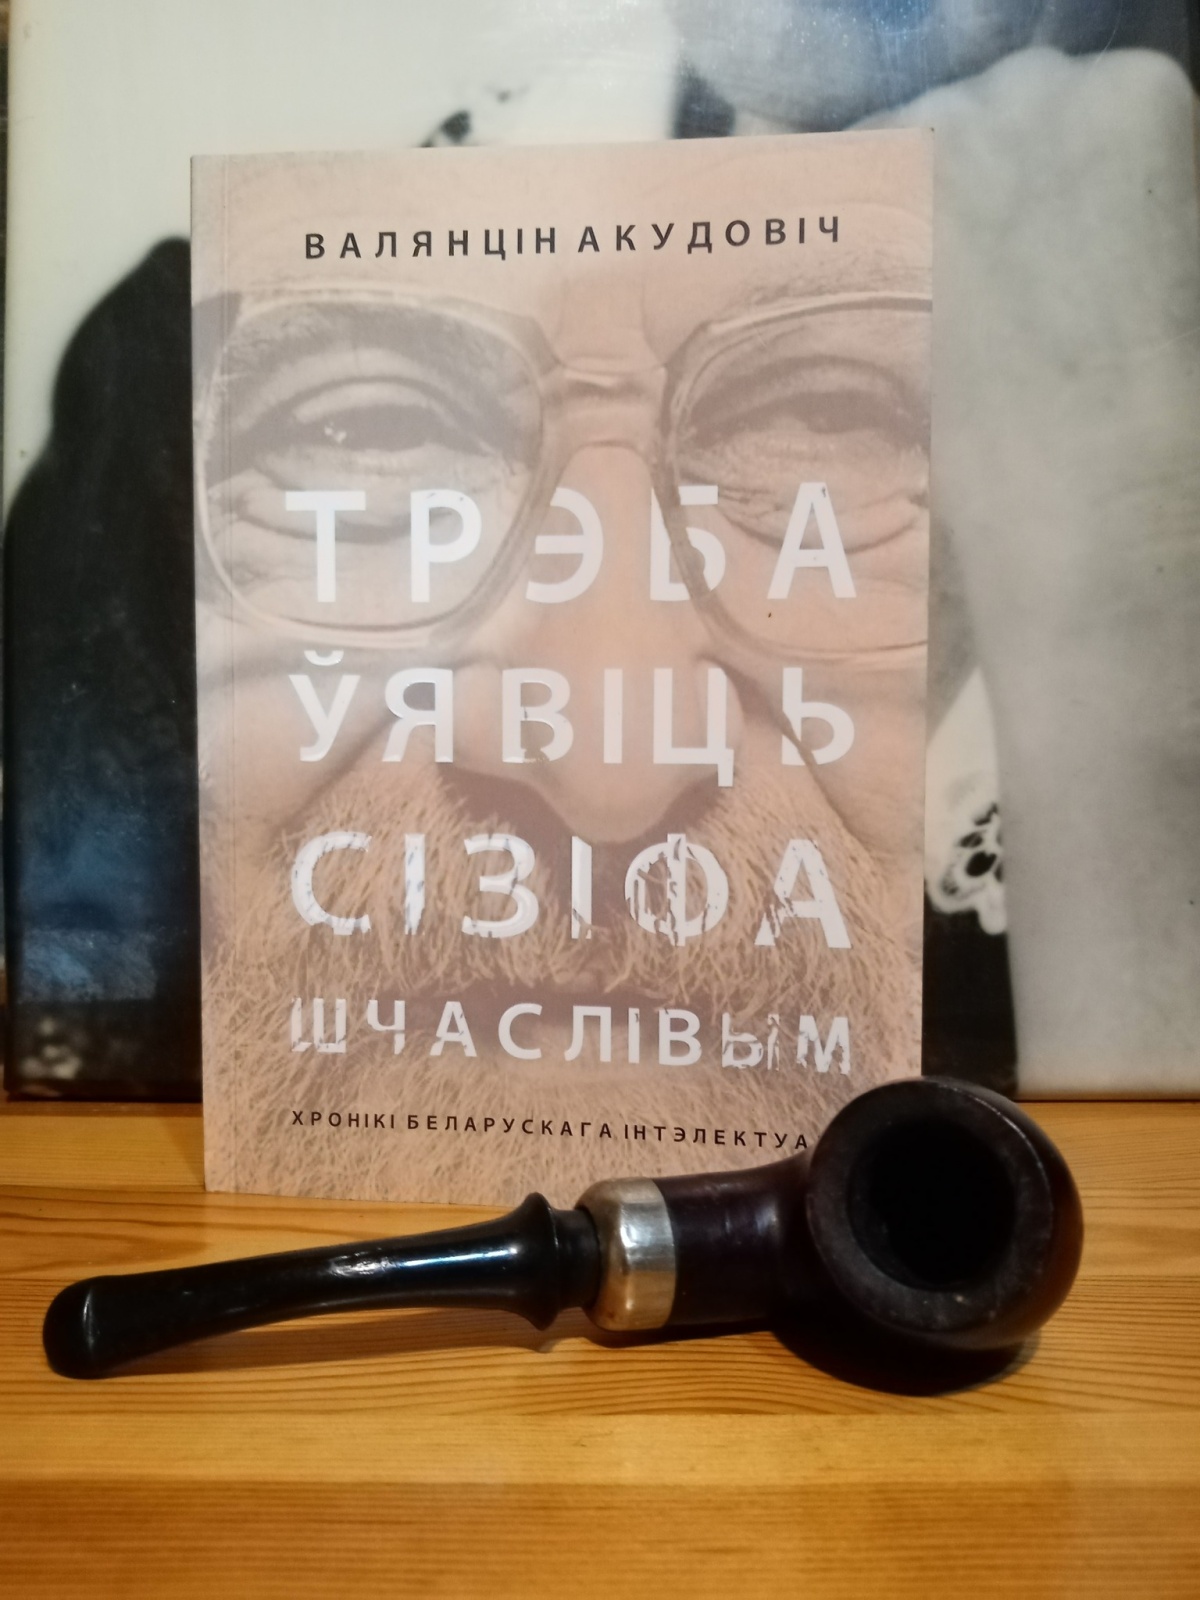 новая кніга Валянціна Акудовіча